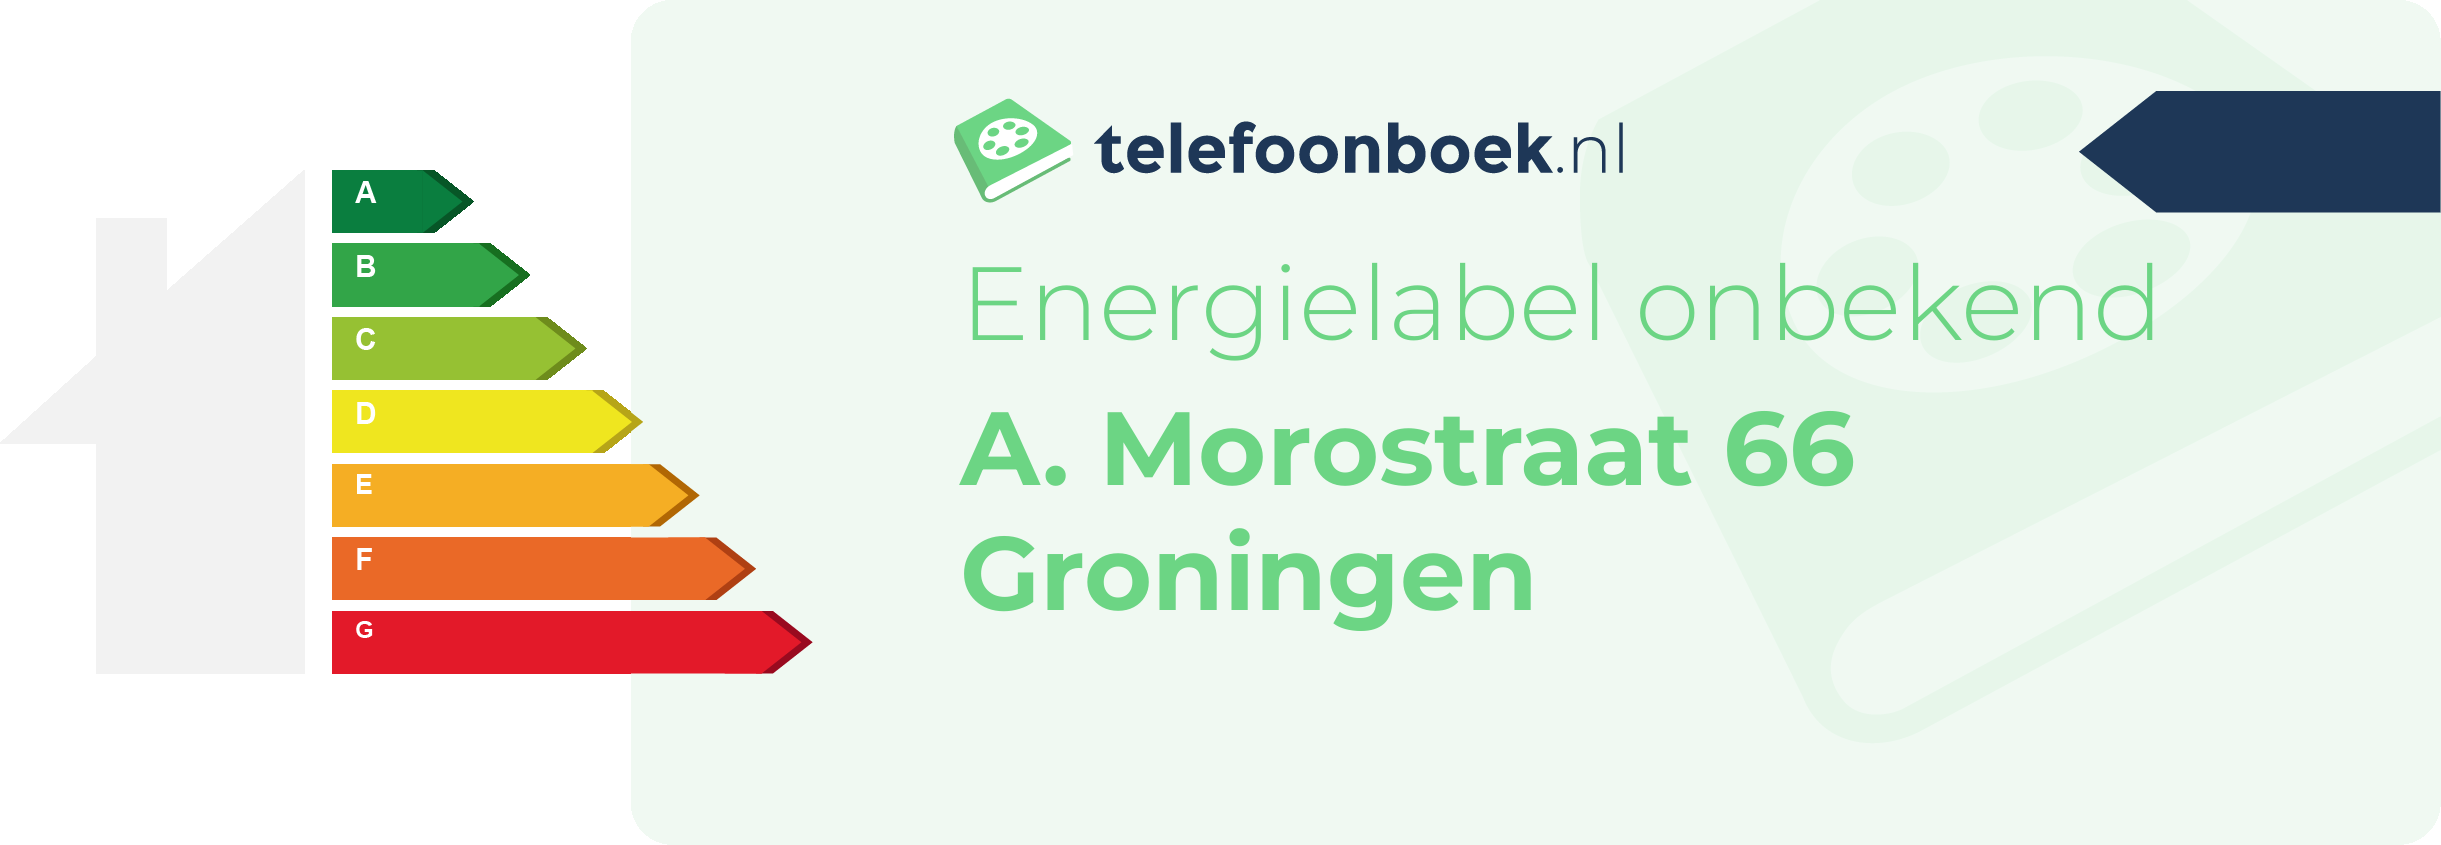 Energielabel A. Morostraat 66 Groningen